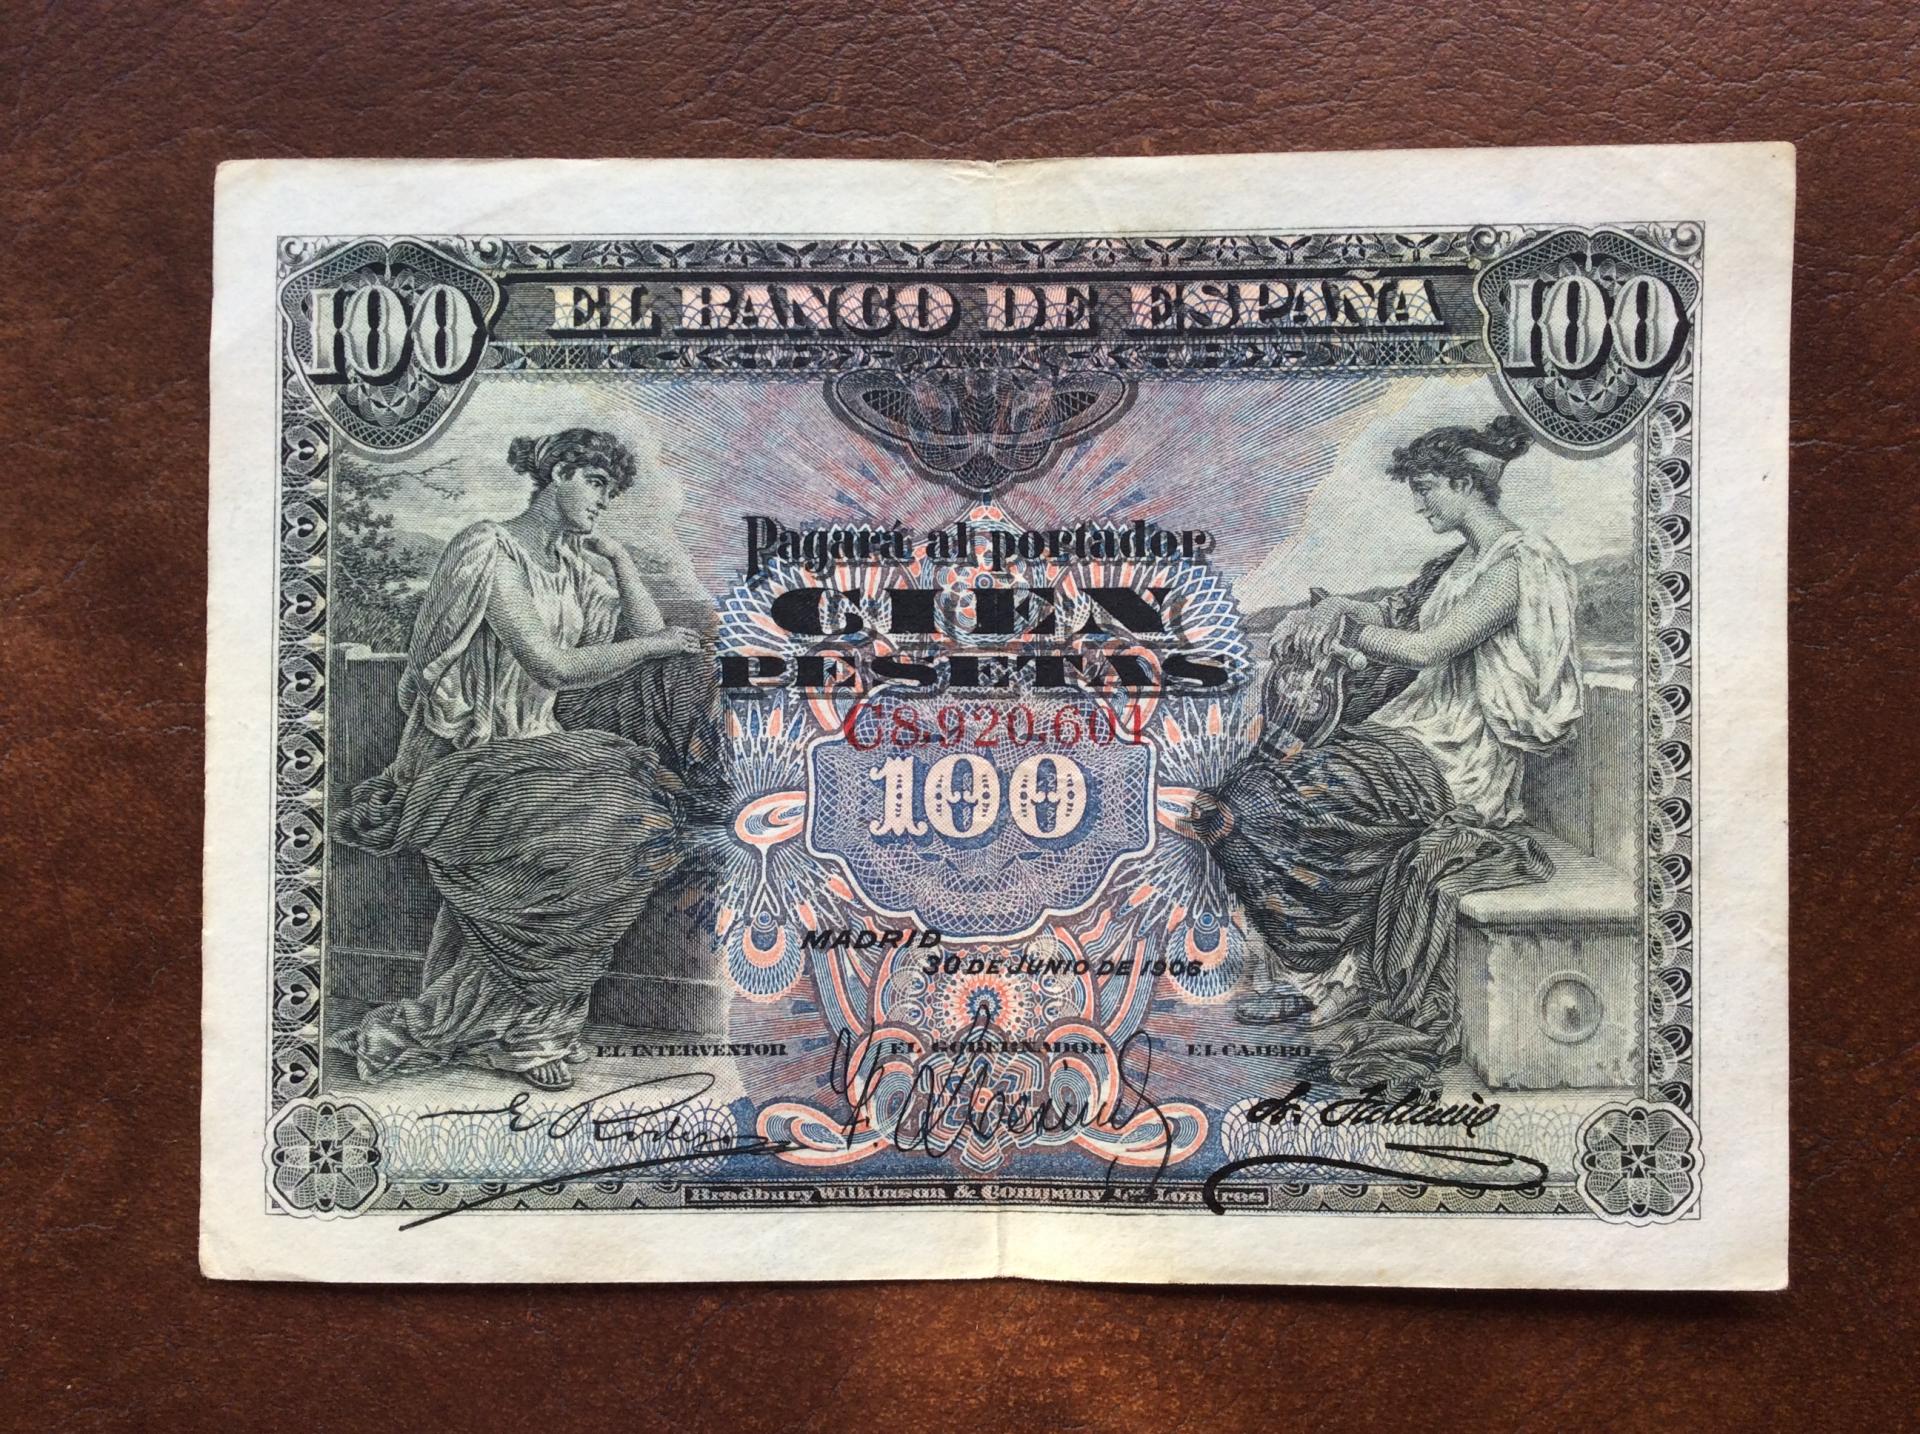 100 PESETAS 1906 - ALEGORÍAS - ALFONSO XIII